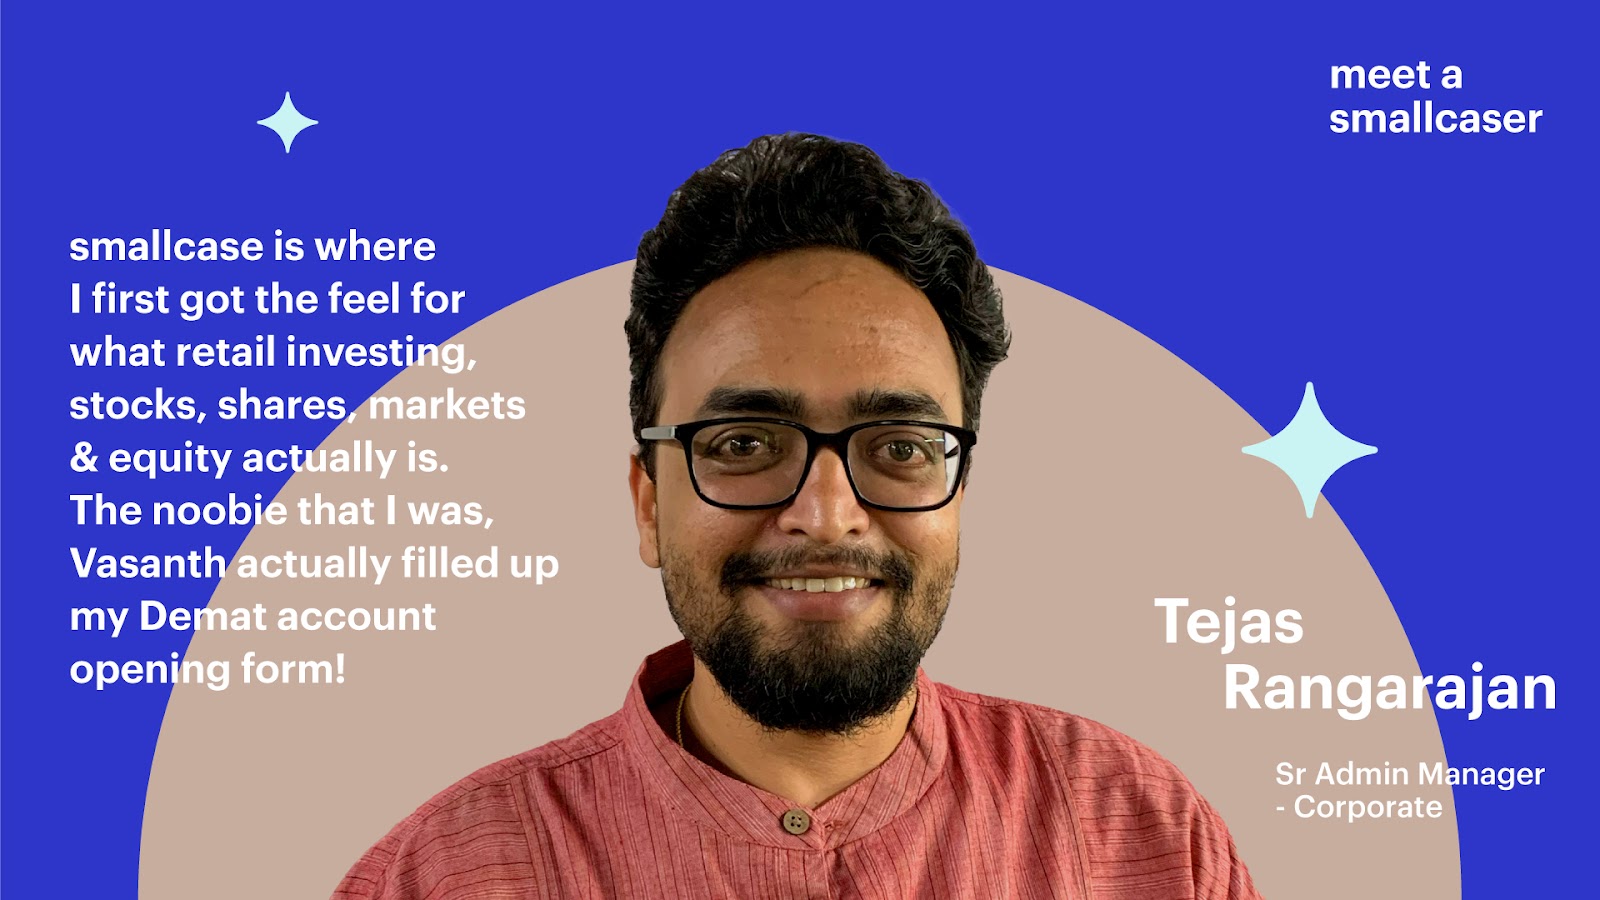 Meet a smallcaser: Tejas Rangarajan